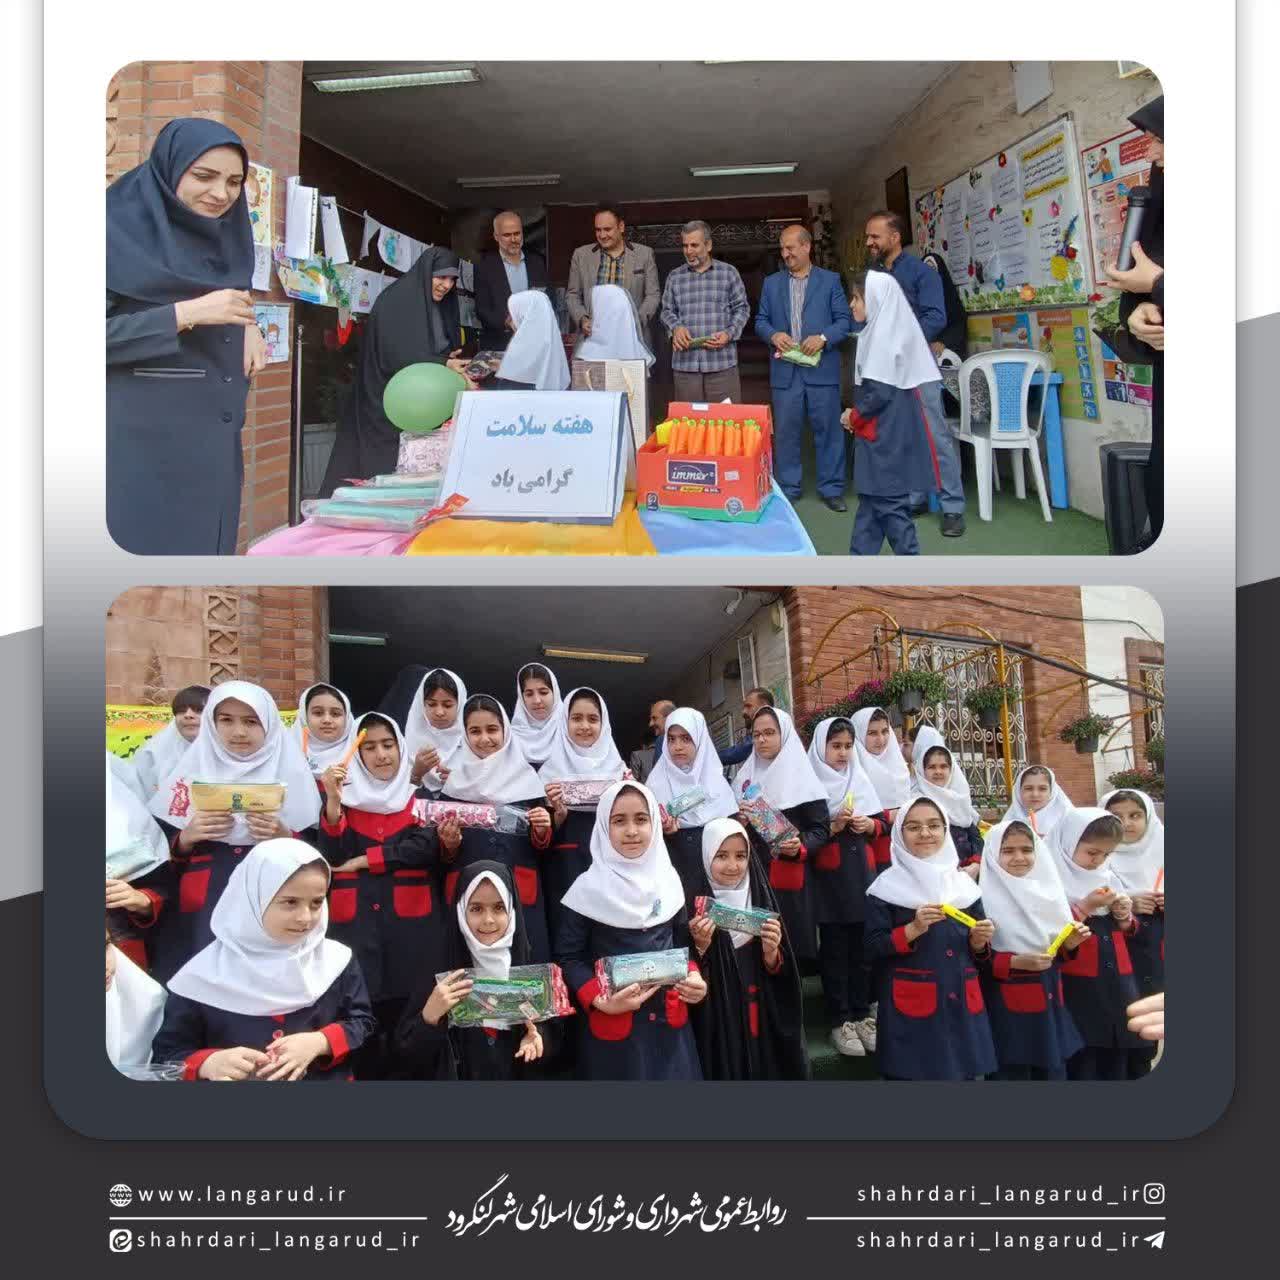 حضور شهردار و شورای اسلامی لنگرود در مدرسه شاهد لنگرود وبحث تفکیک زباله 